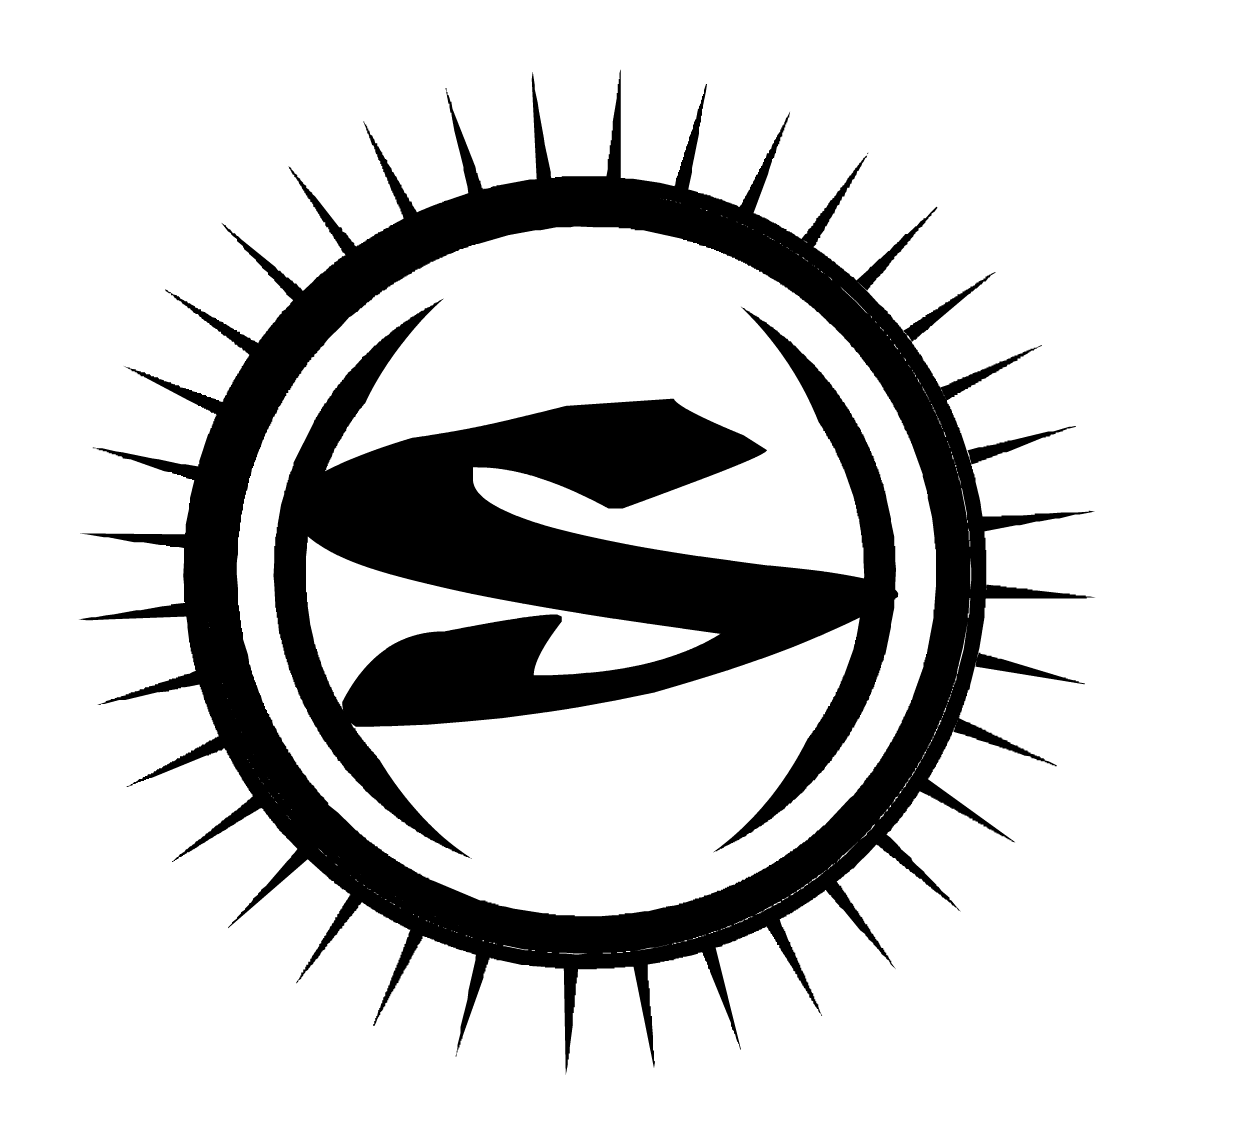 Solstice Logo